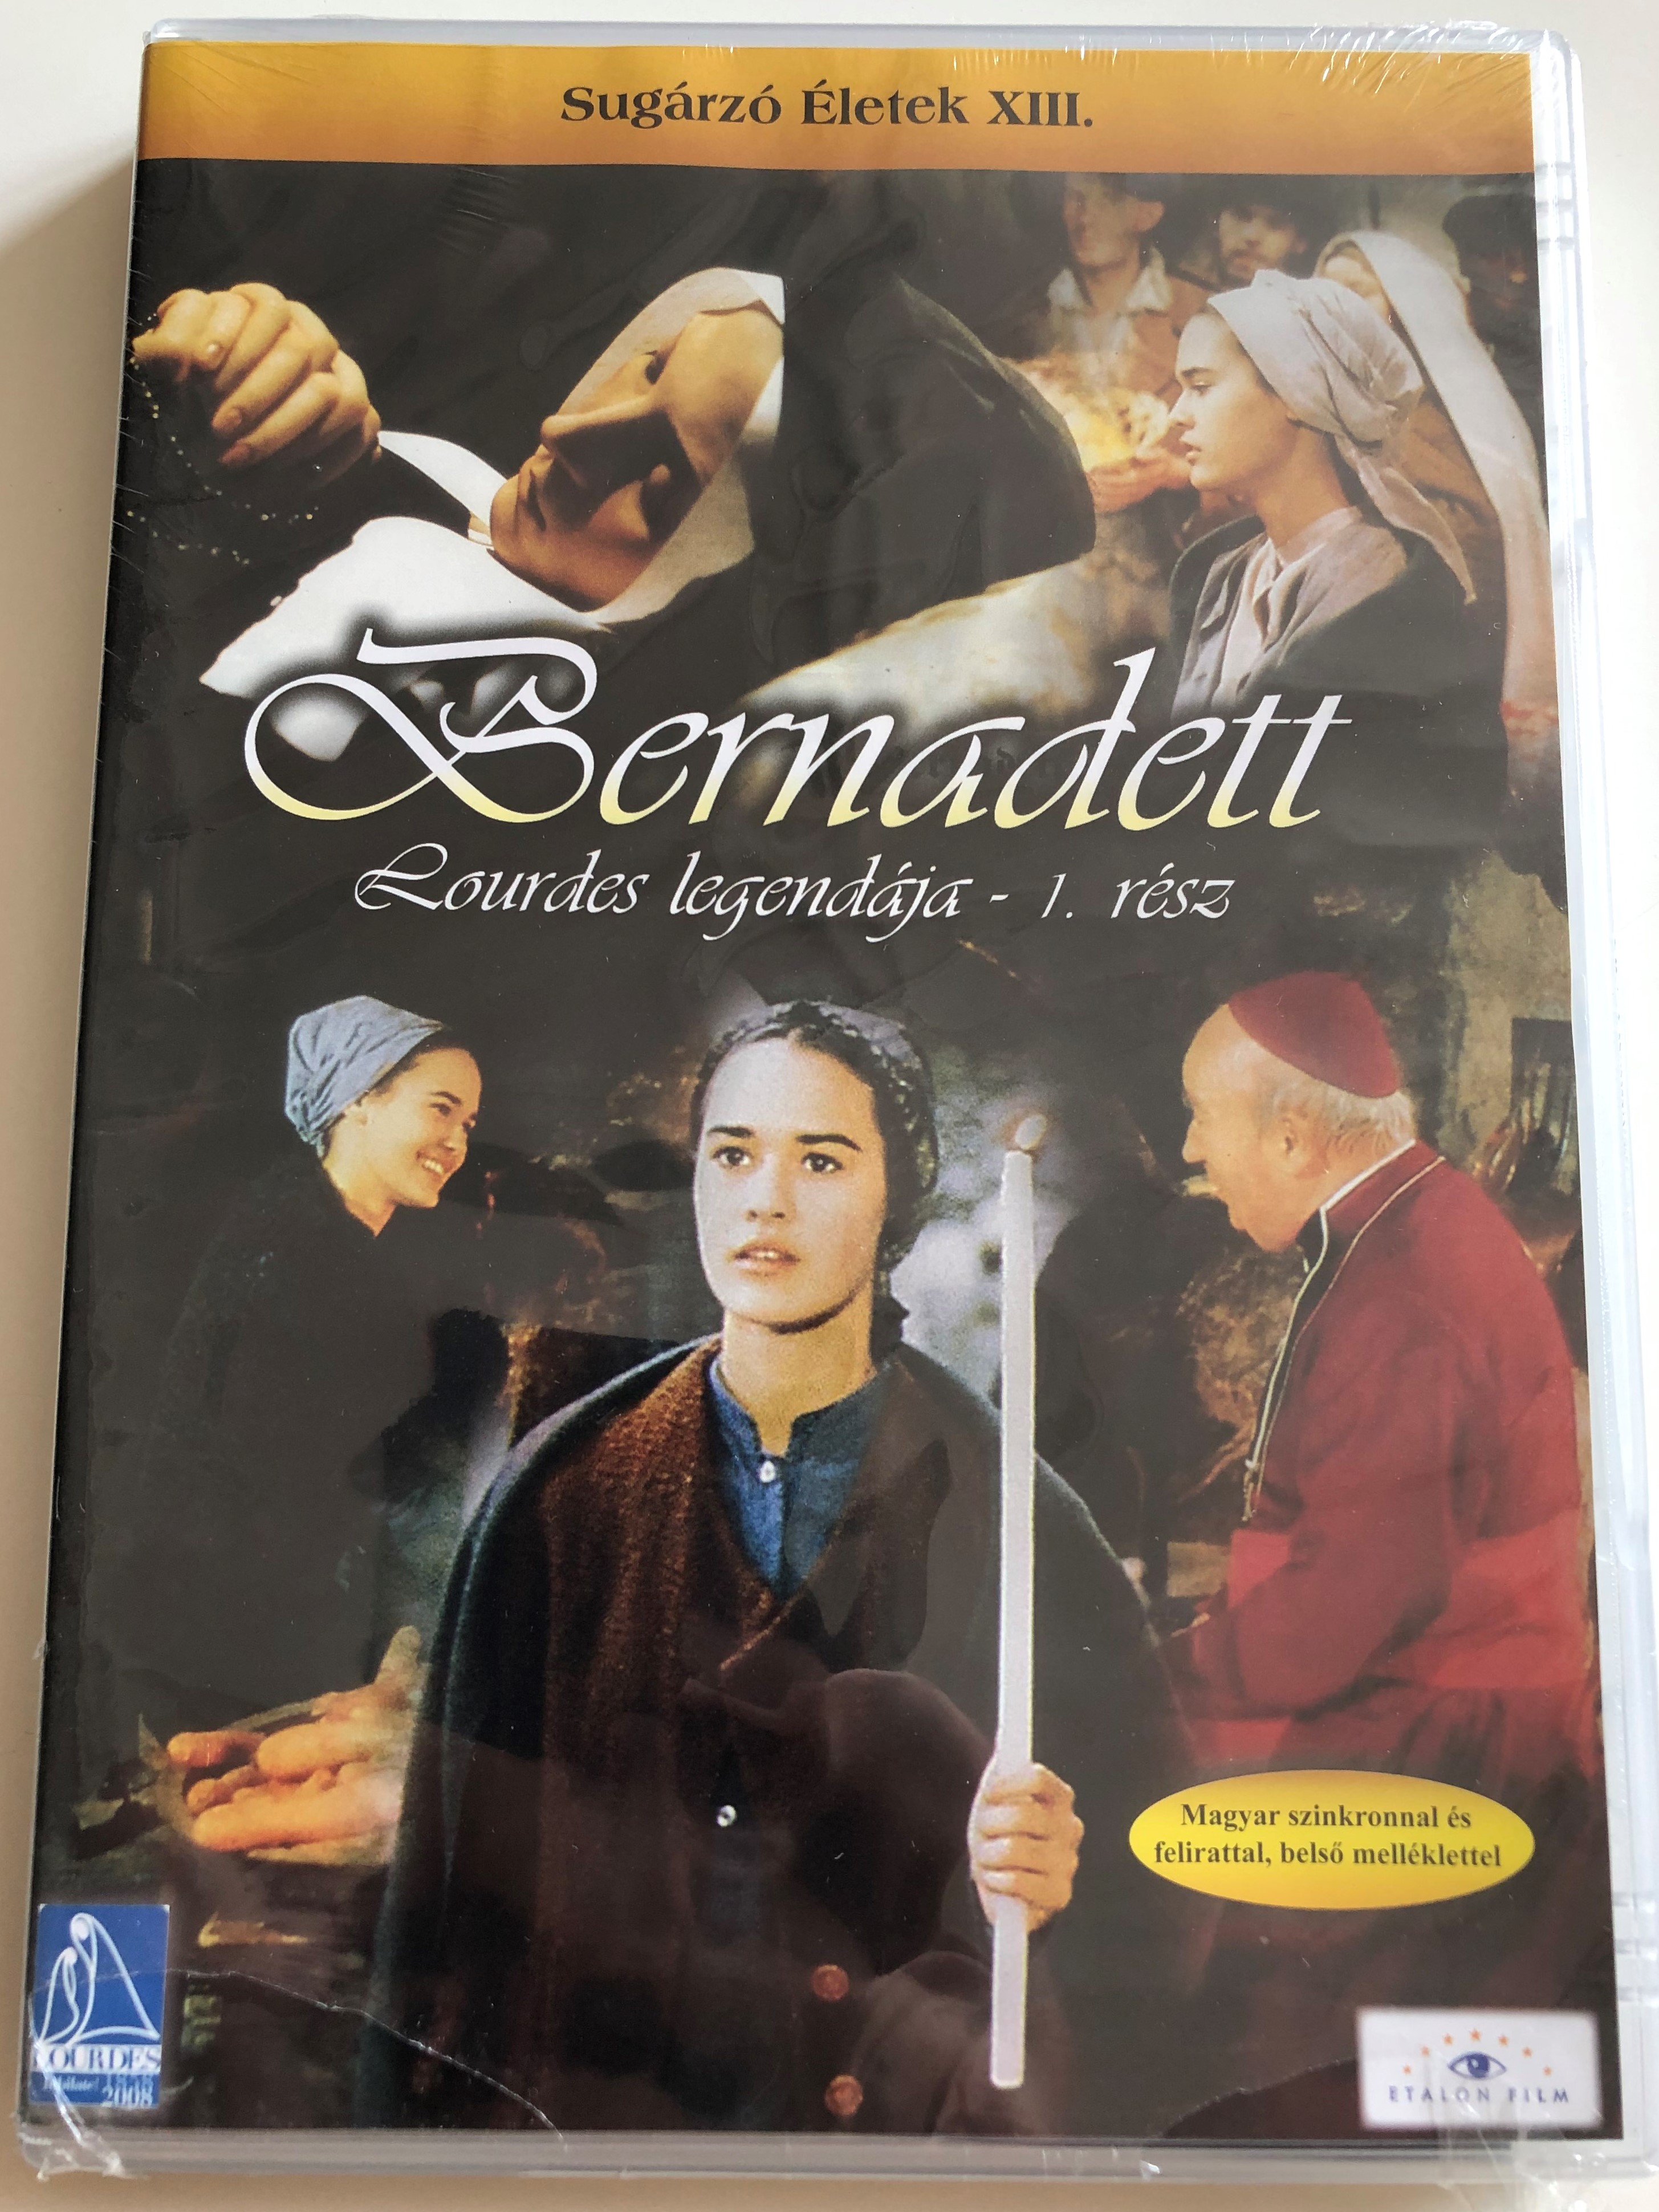 la-passion-de-bernadette-part-i.-dvd-1989-bernadett-lourdes-legend-ja-1.-r-sz-directed-by-jean-delannoy-starring-sydney-penny-mich-le-simonnet-rolad-lesaffre-1-.jpg